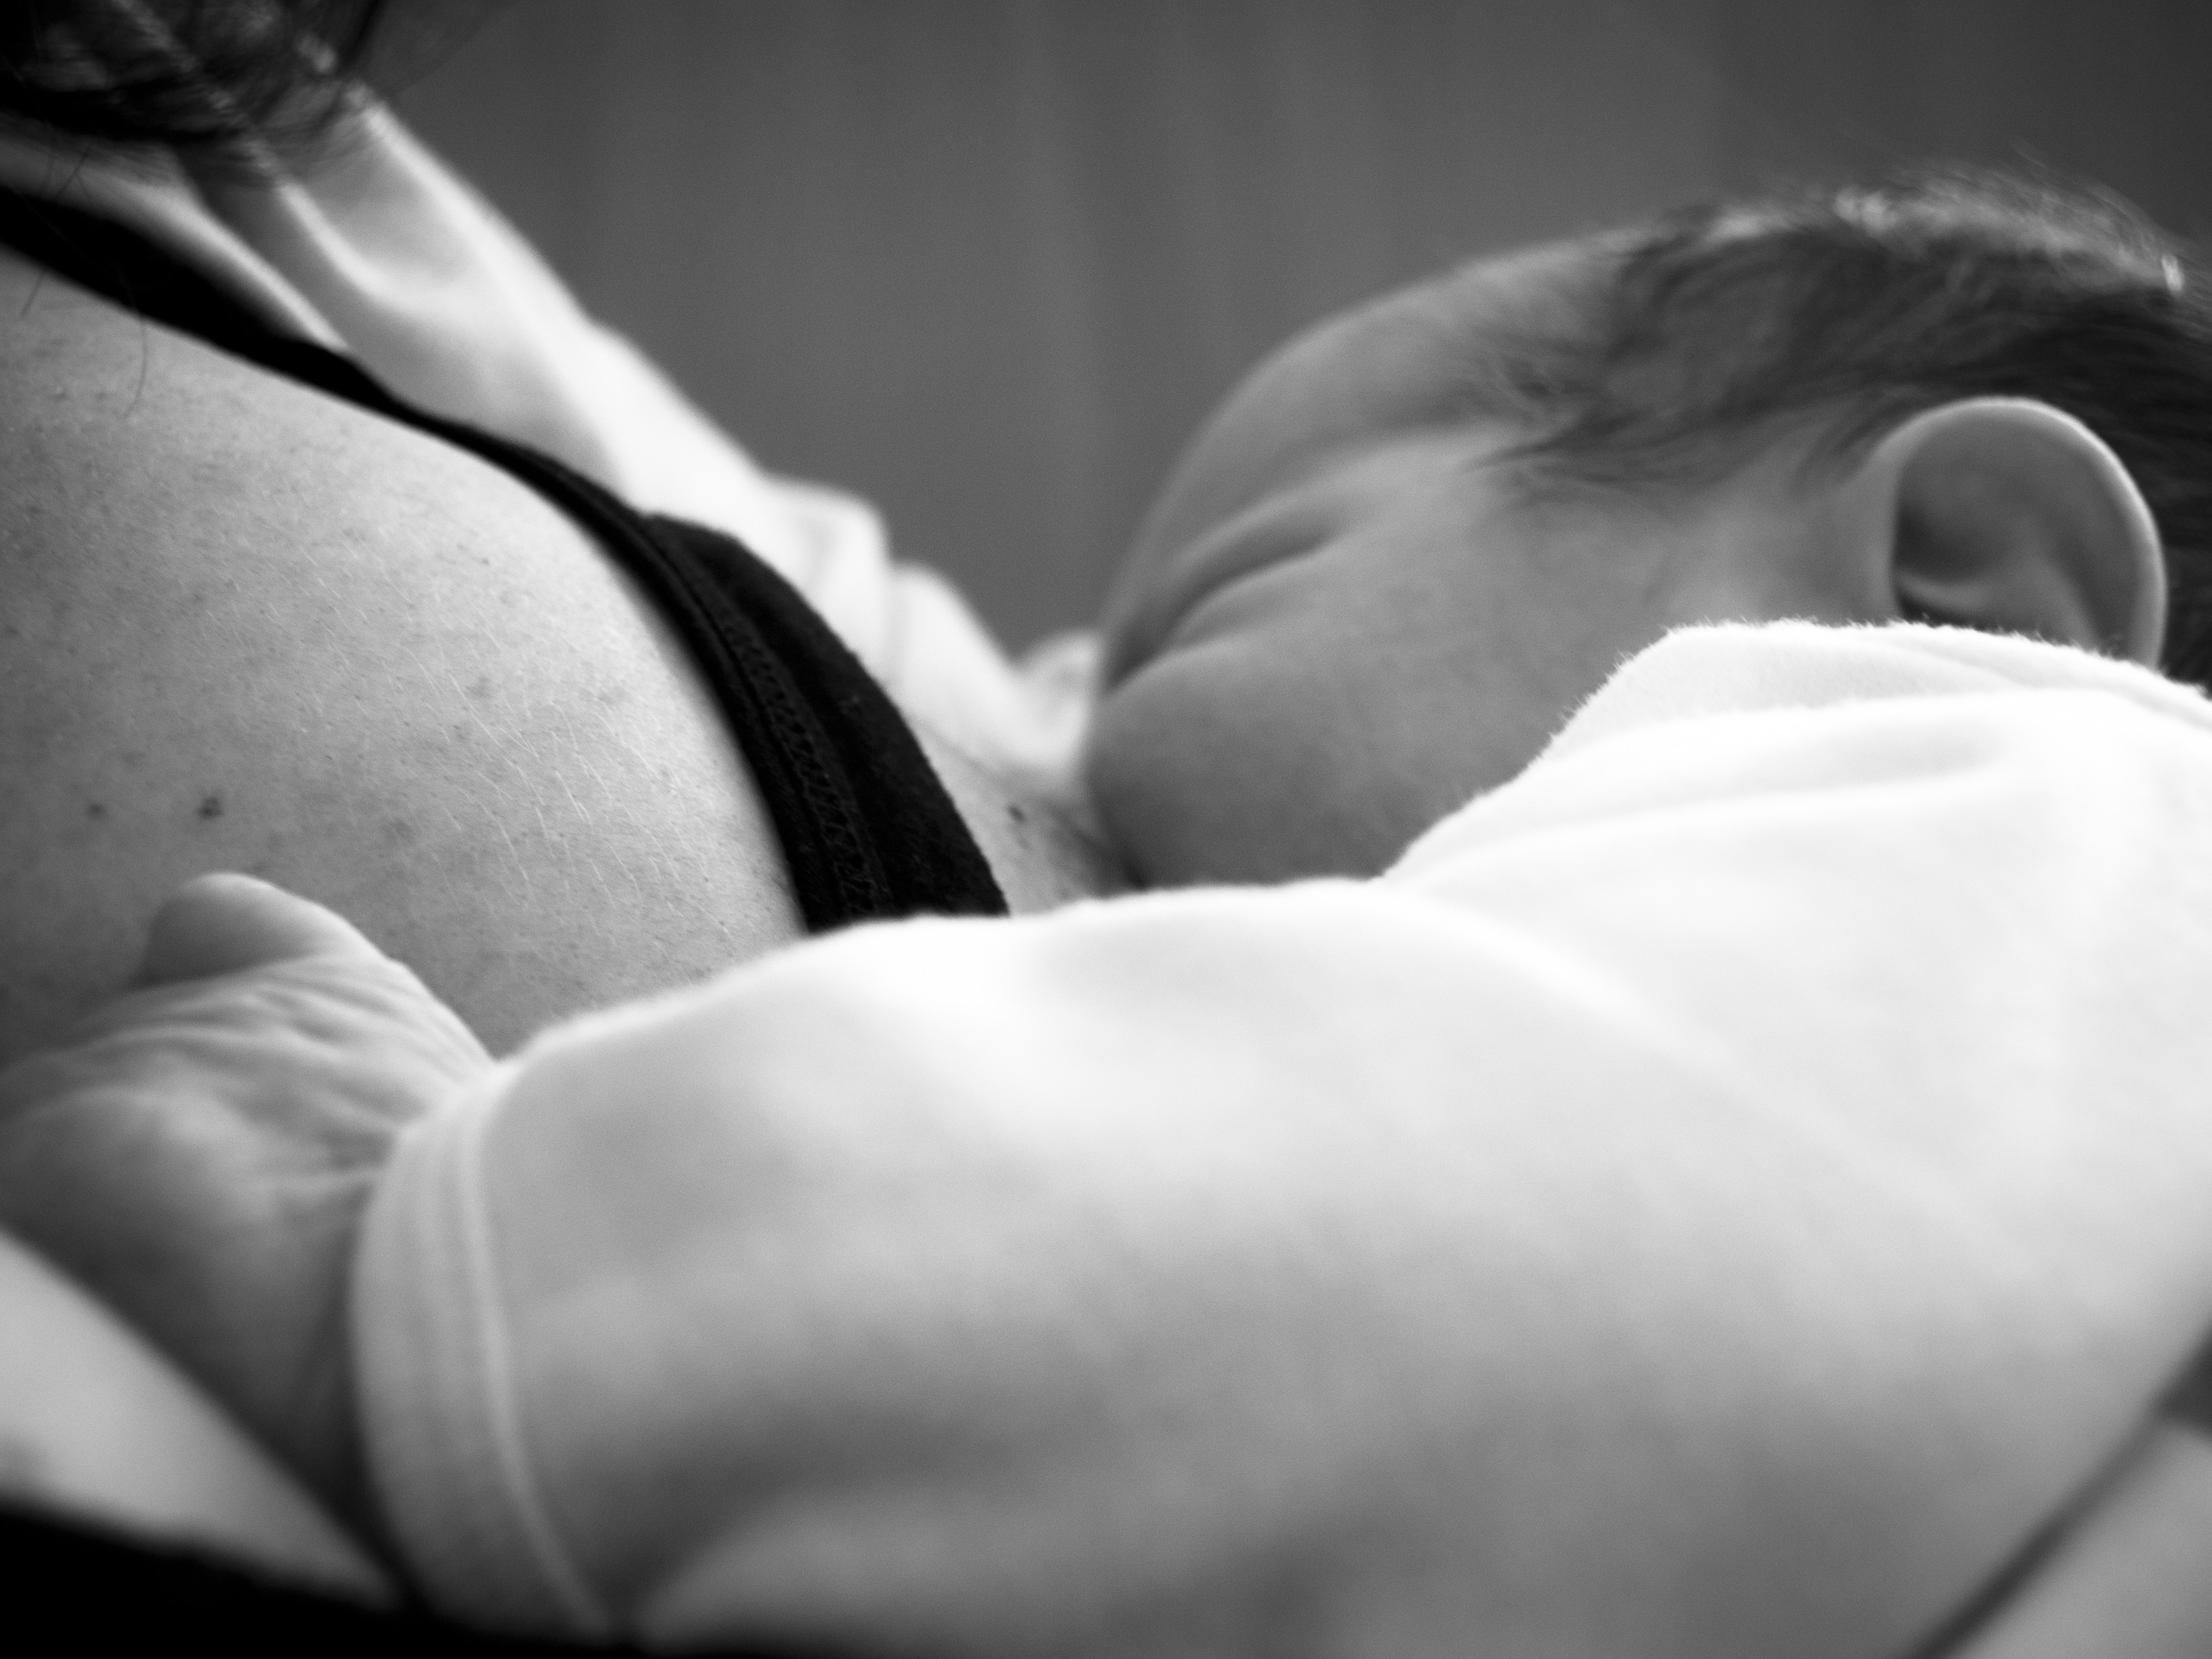 Anya gyermekét szoptatja, Kép: flickr 